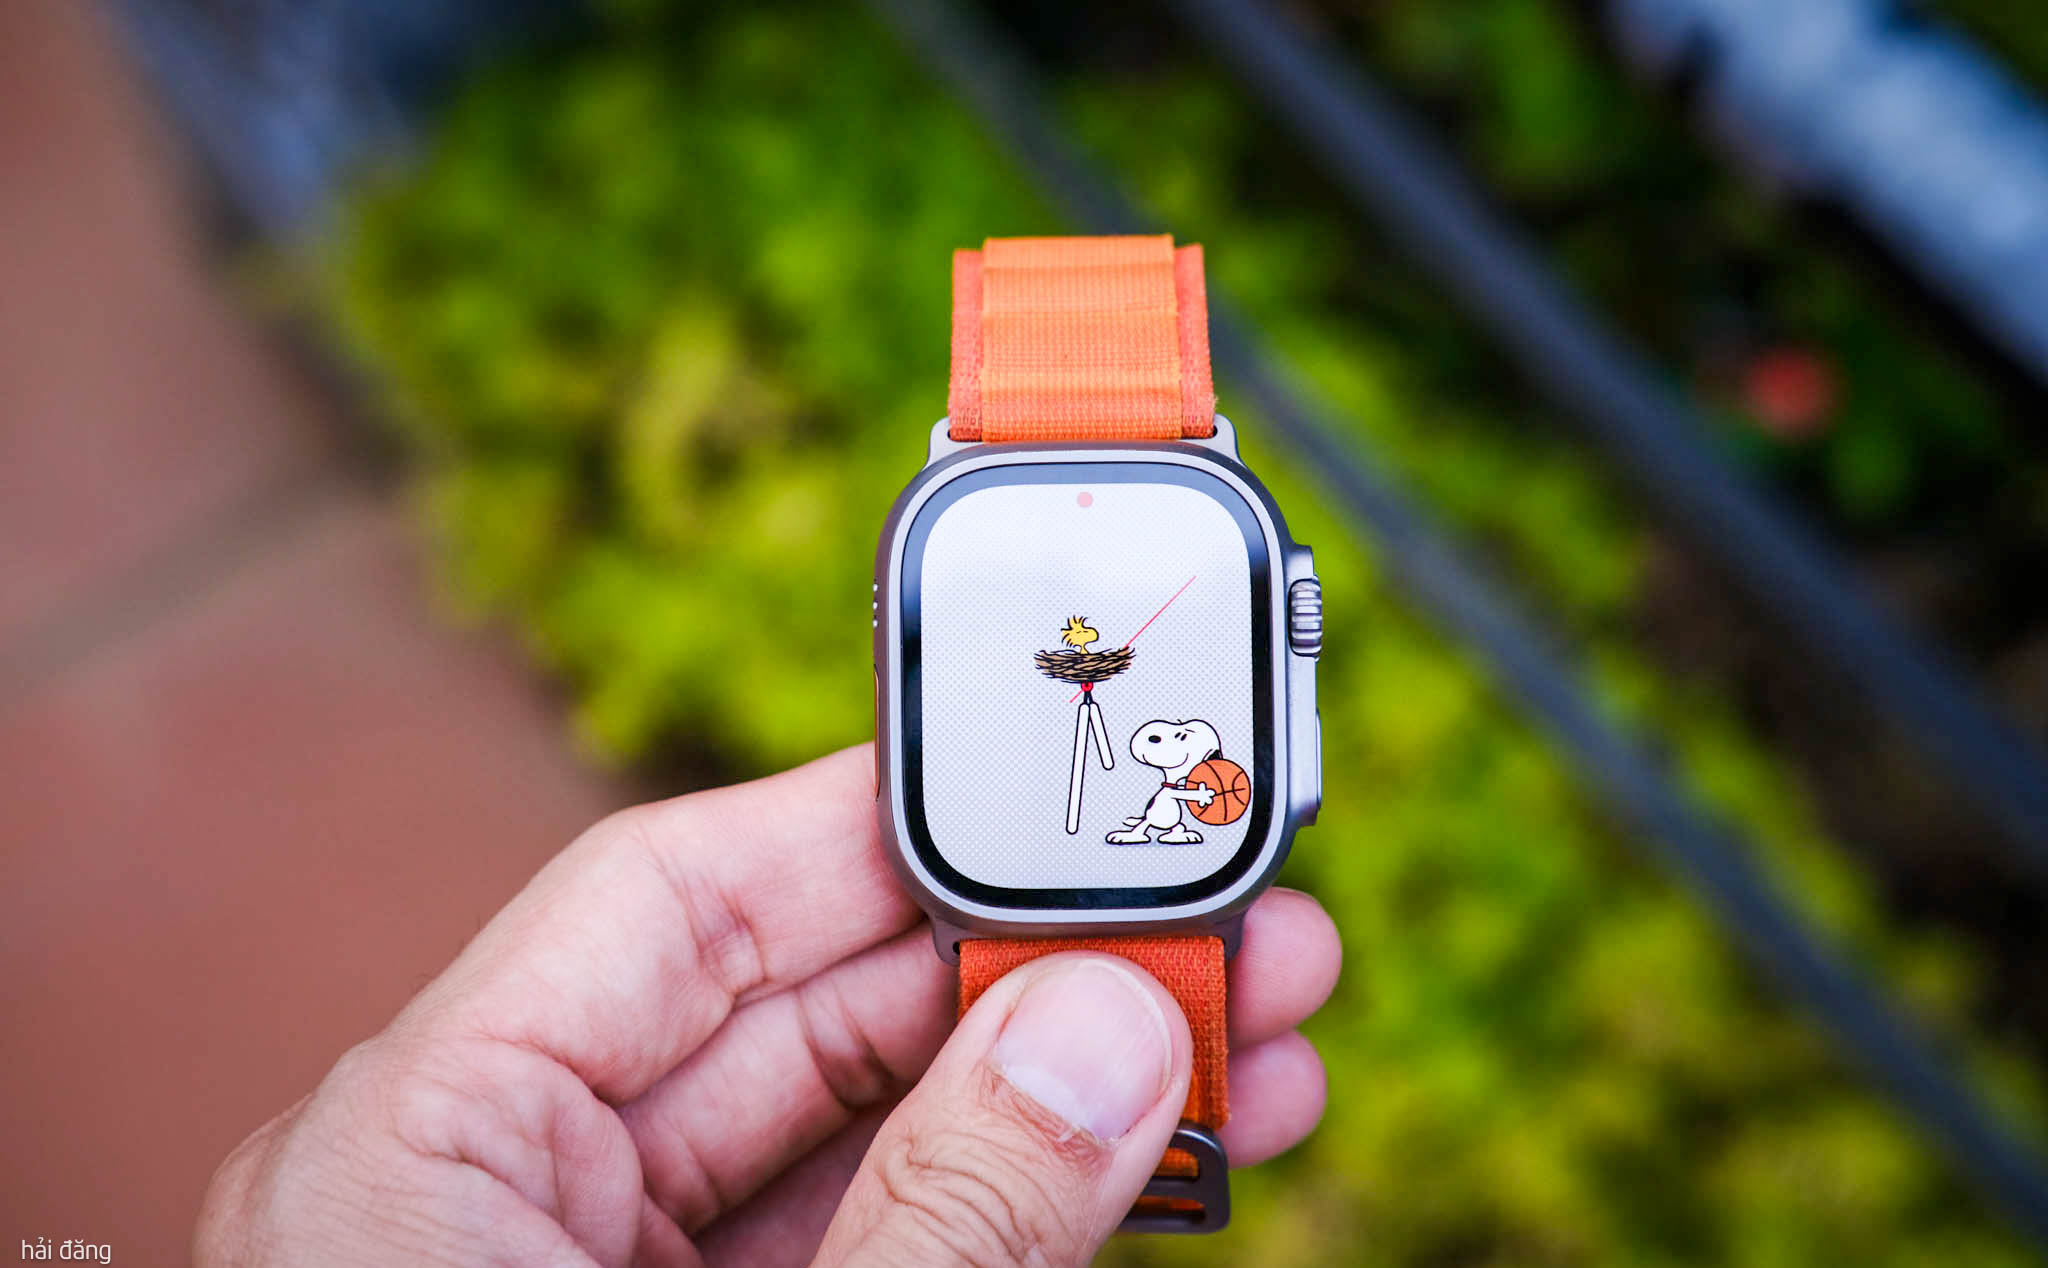 31 mẫu mặt đồng hồ Apple Watch đẹp, ứng dụng thay ảnh xịn nhất -  Thegioididong.com